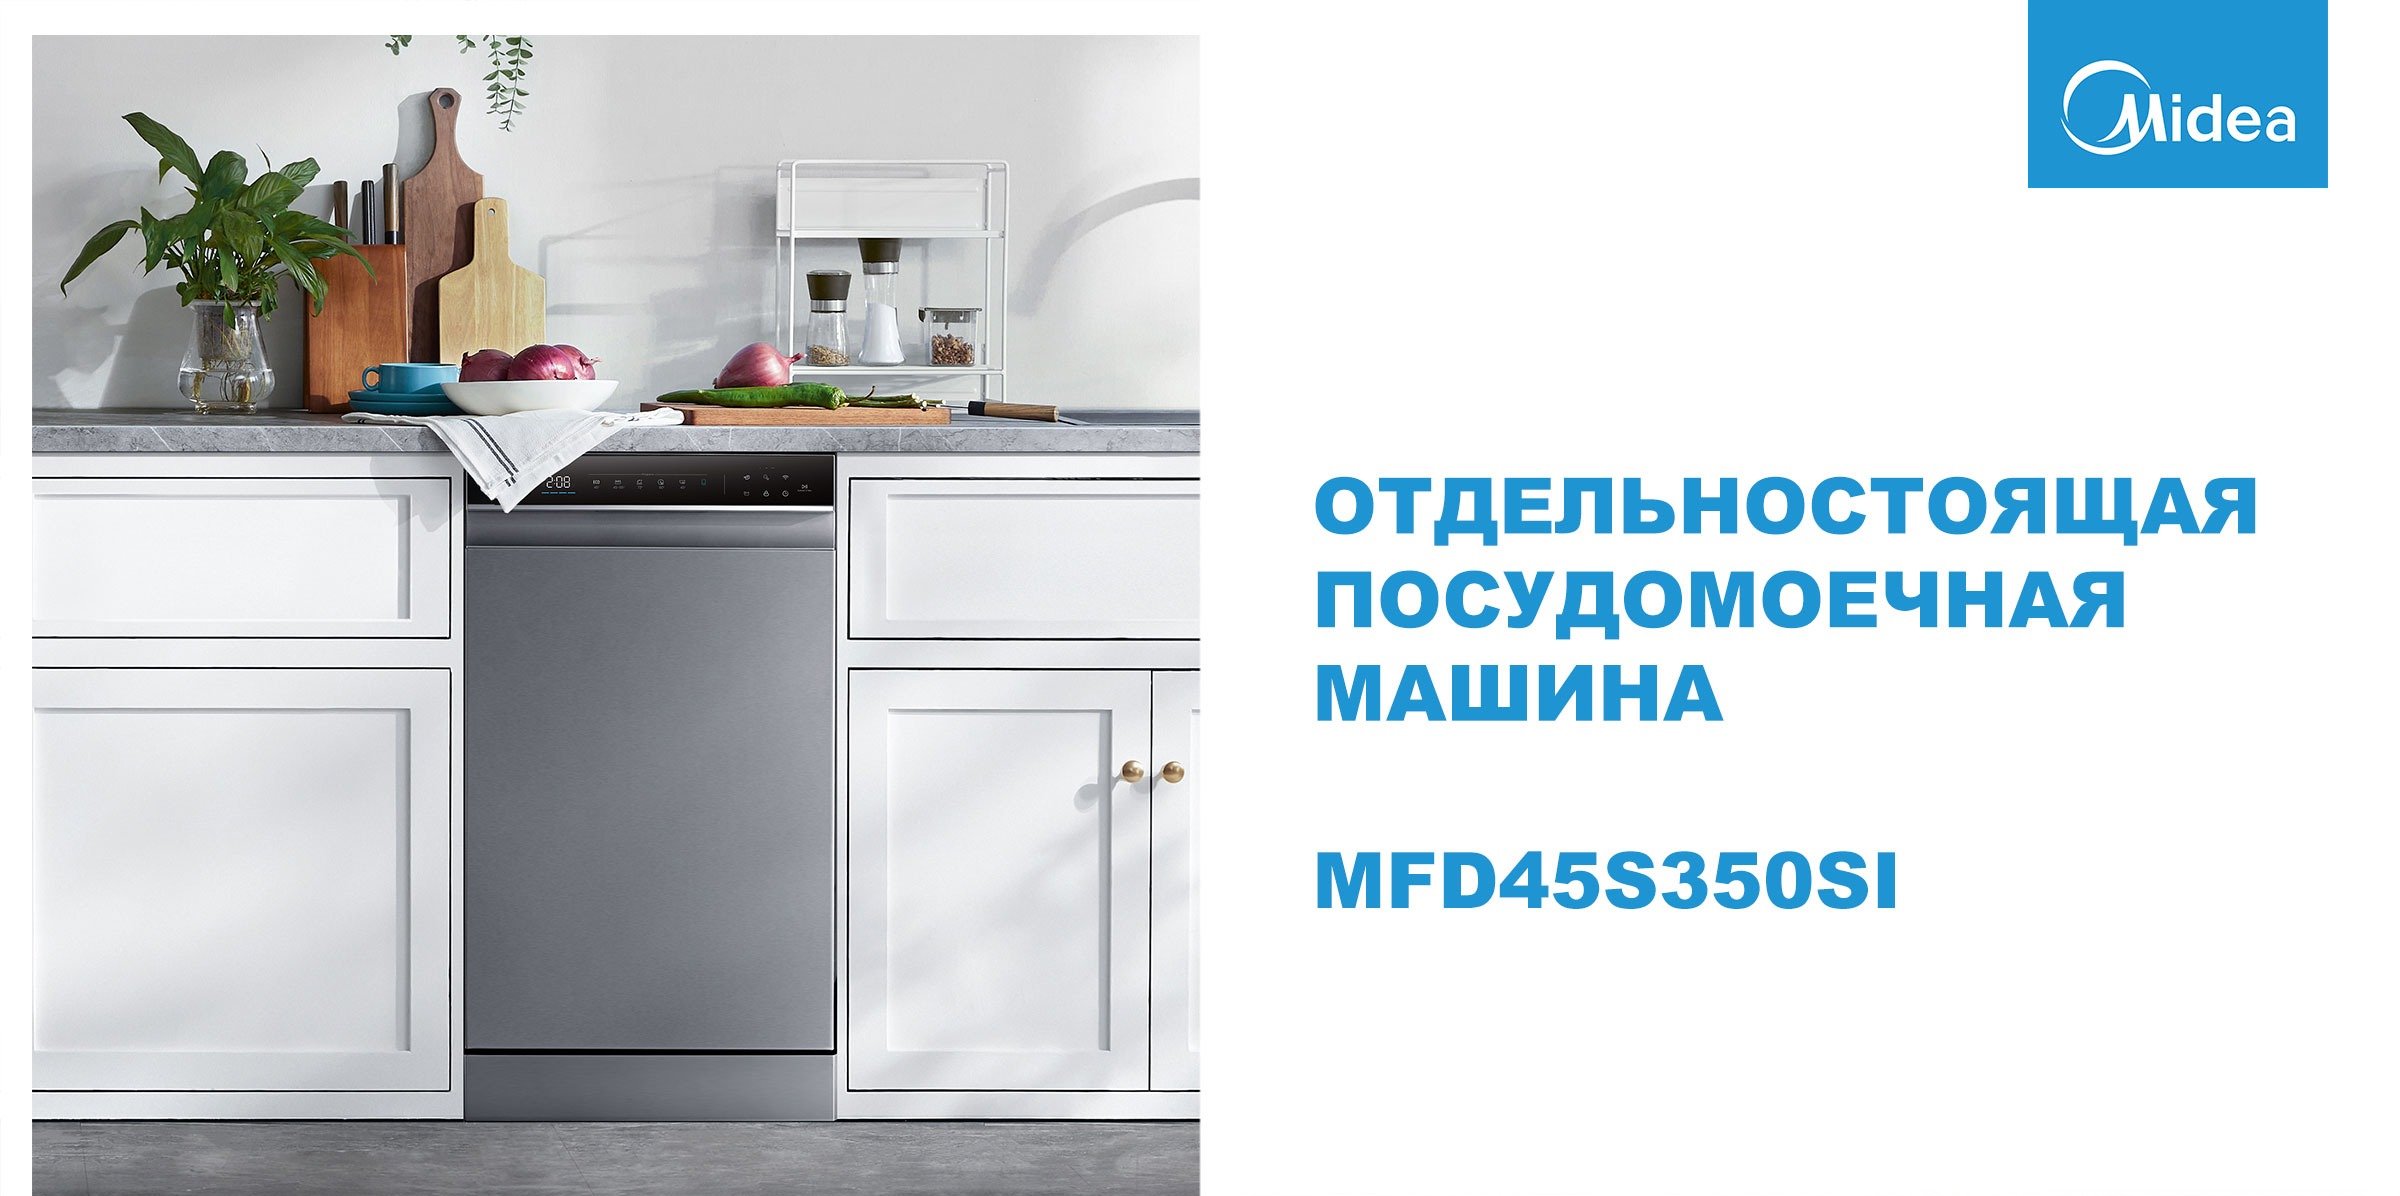 Посудомоечная машина Midea MFD45S350Si купить в Красноярске